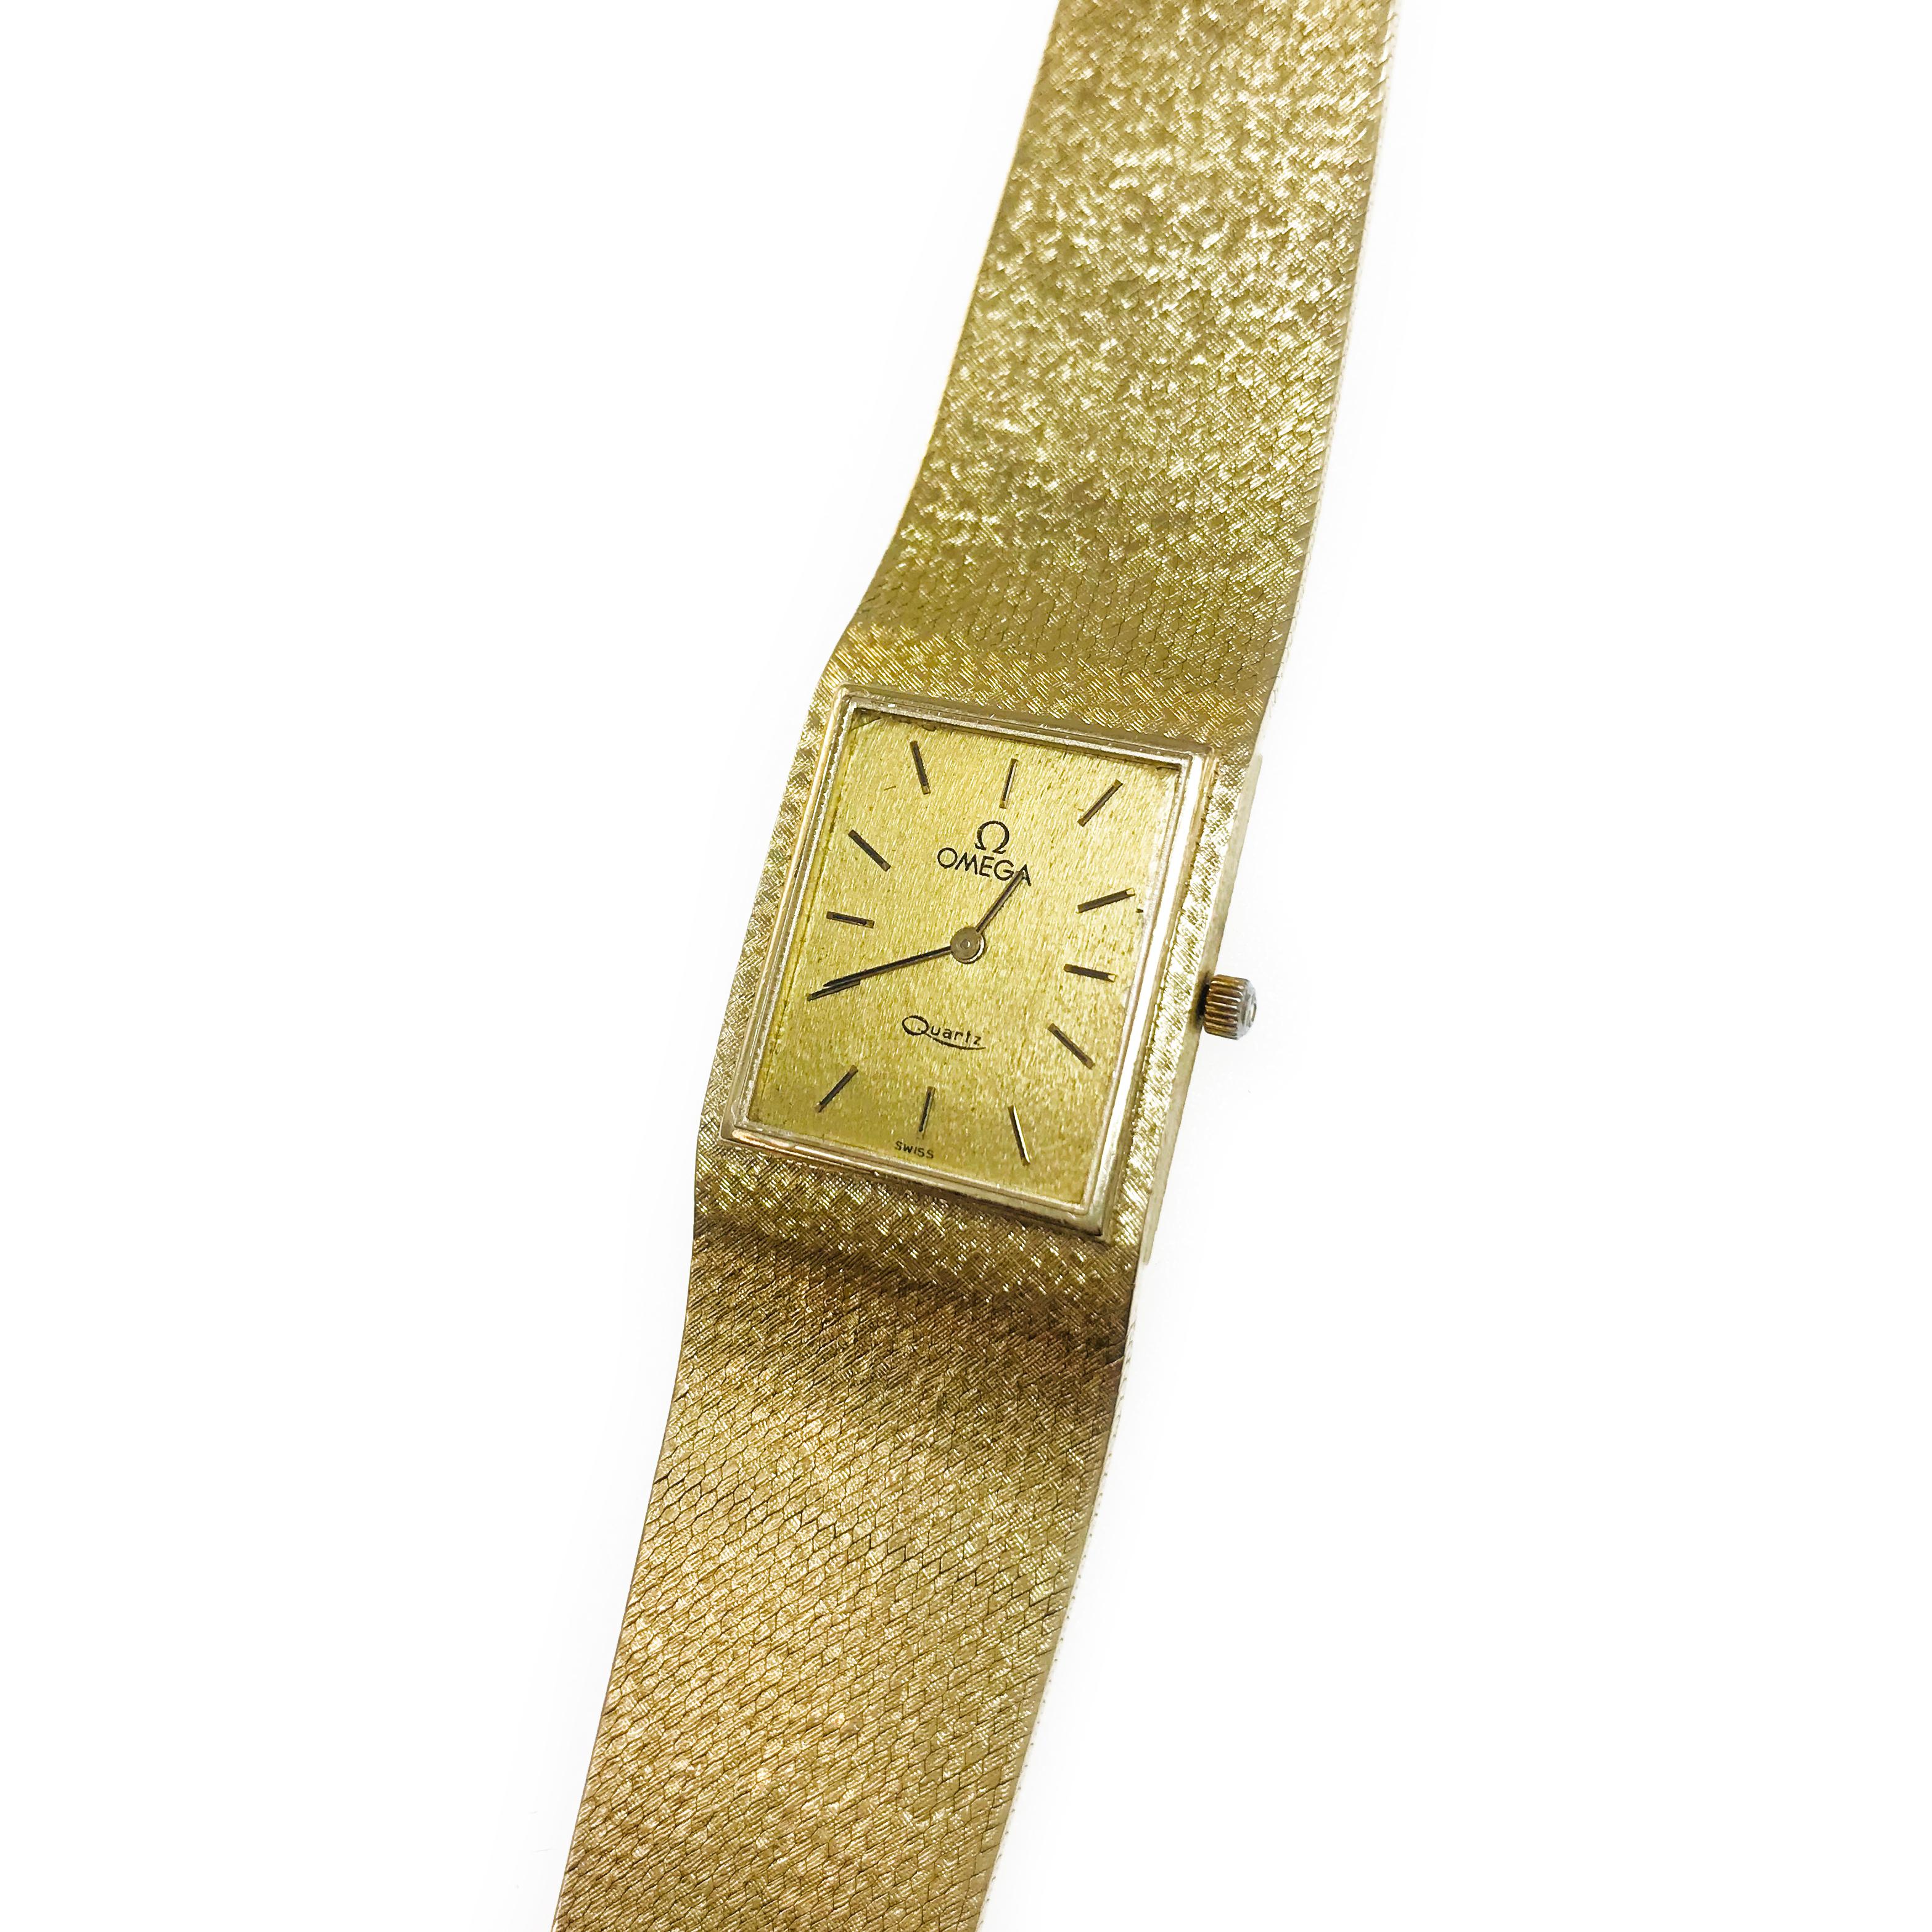 Vintage Thin 14 Karat Omega 6 Jewel Quartz Watch. Le cadran à face rectangulaire est encadré d'une lunette en or et le reste du cadran et du bracelet présente un motif tissé. Les aiguilles des heures et des minutes de style bâton et le symbole Omega